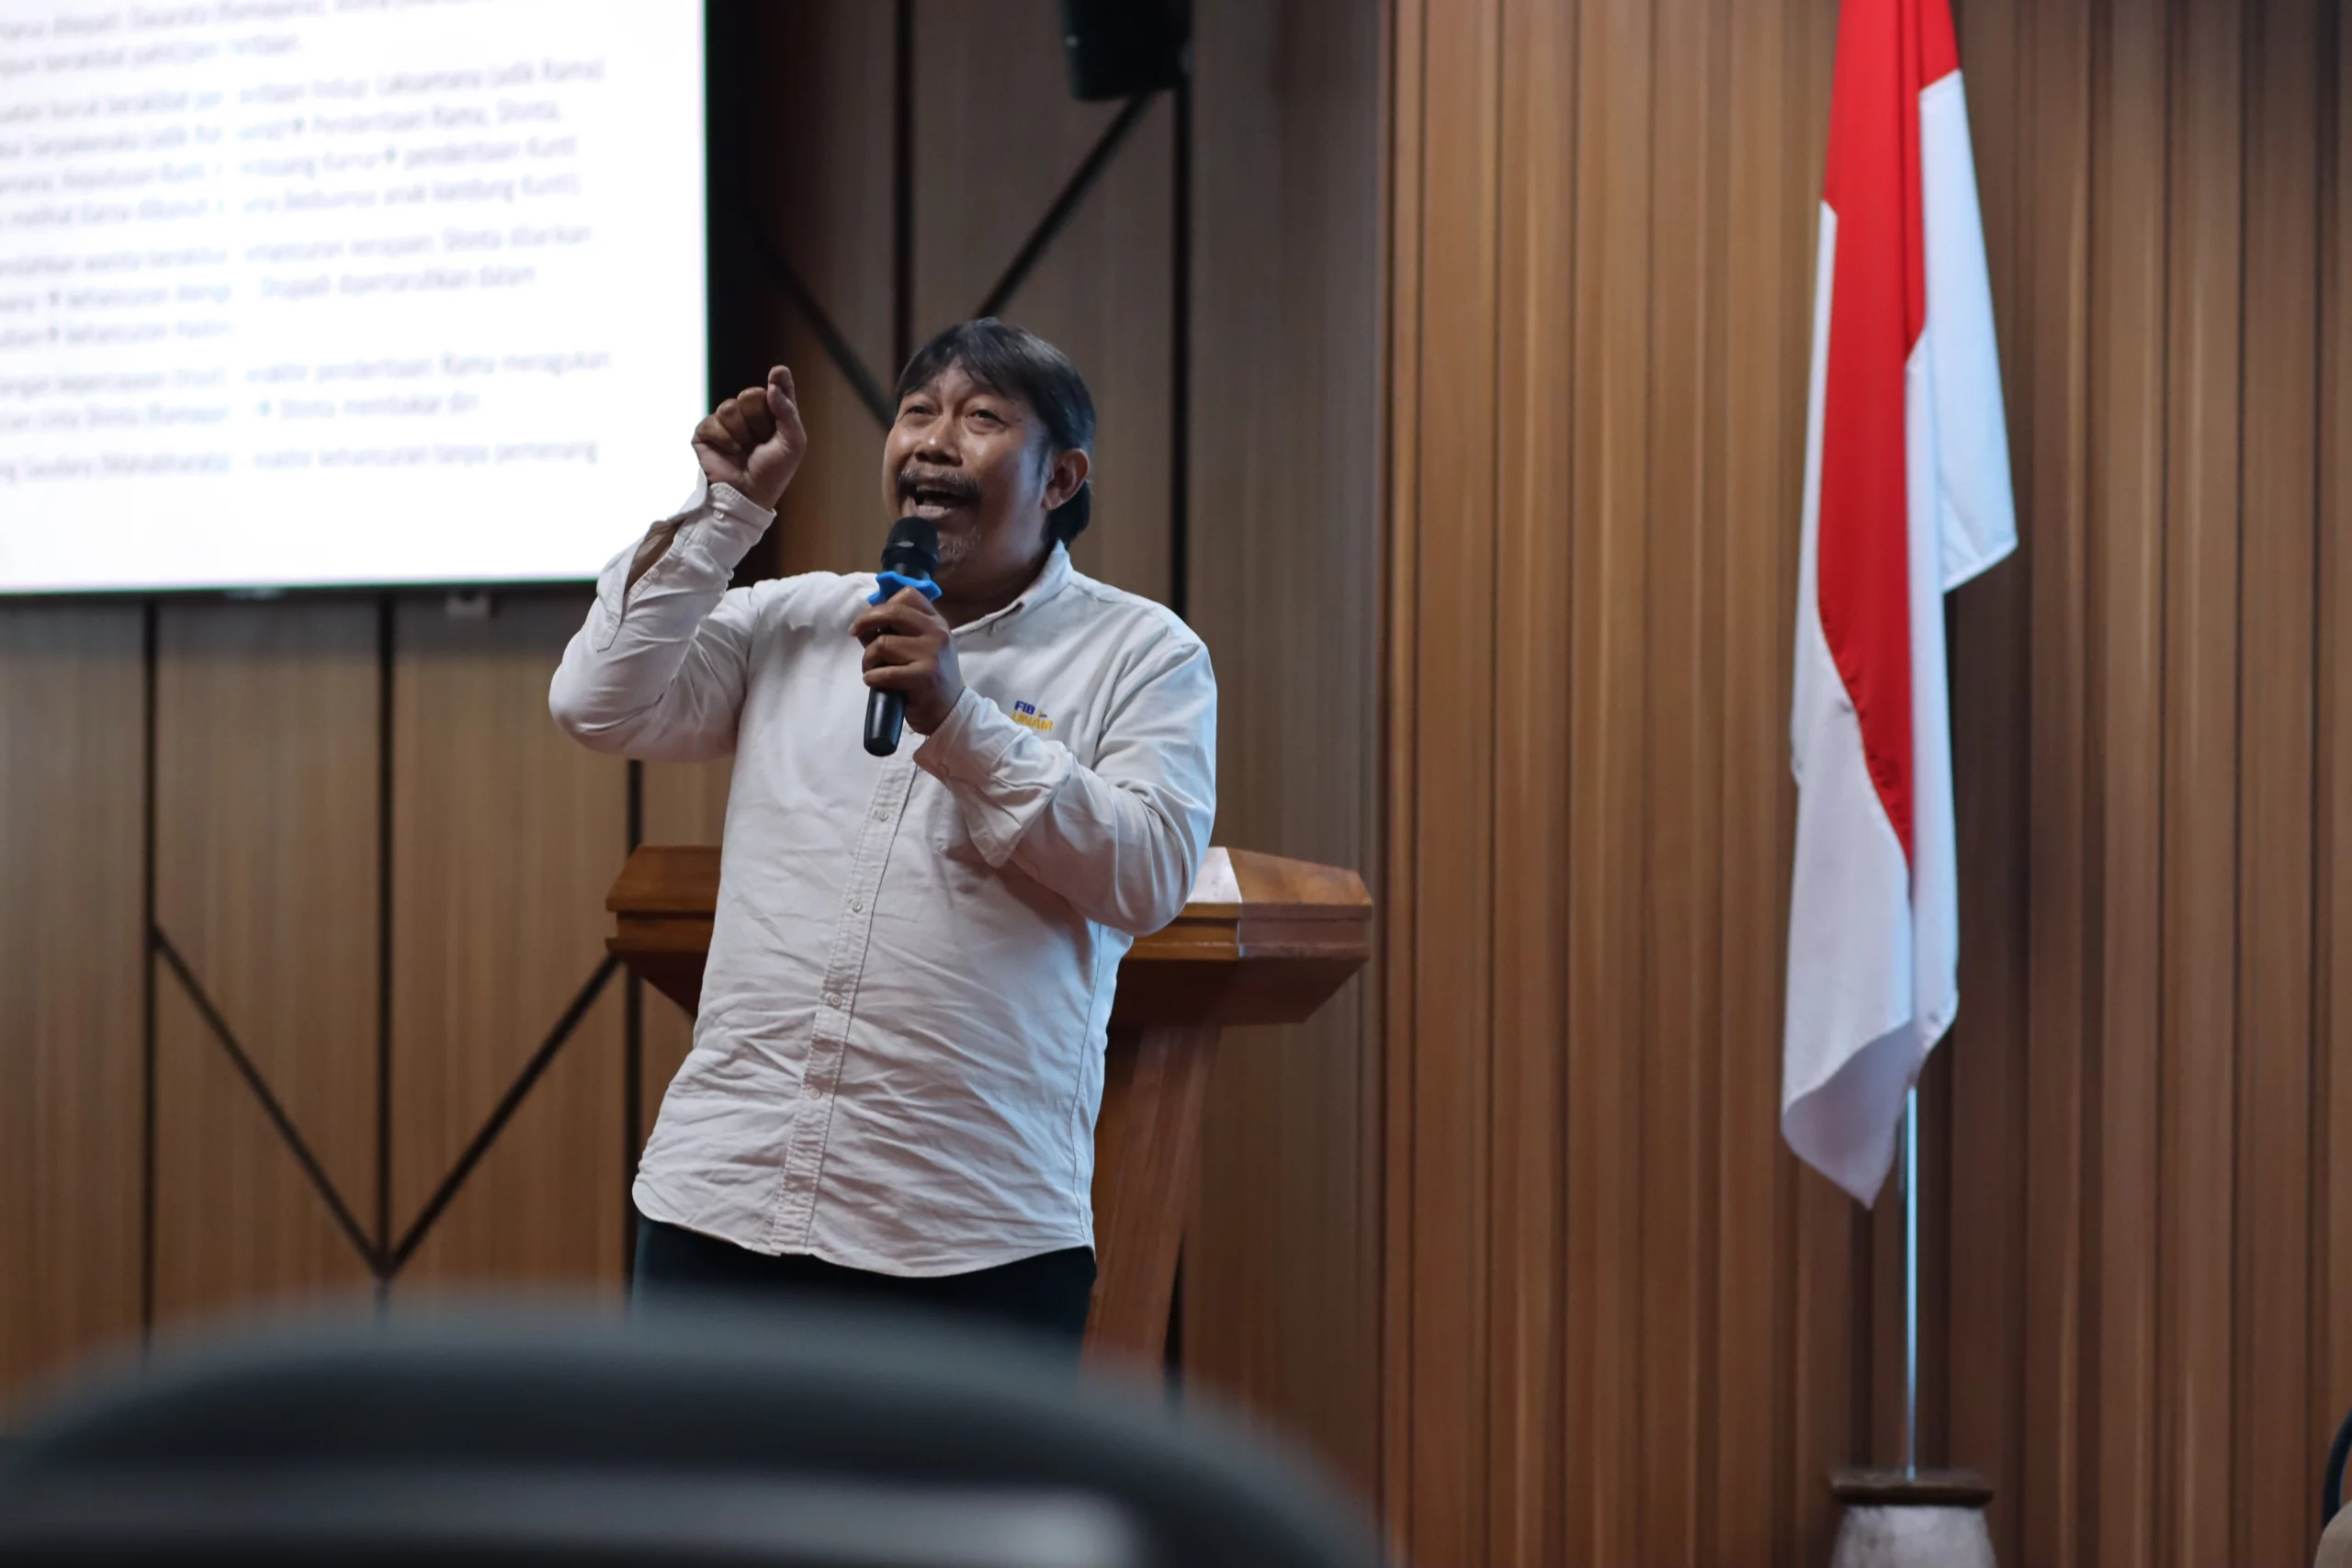 Budaya, Masyarakat, dan Sejarah dalam Kesusastraan Indonesia